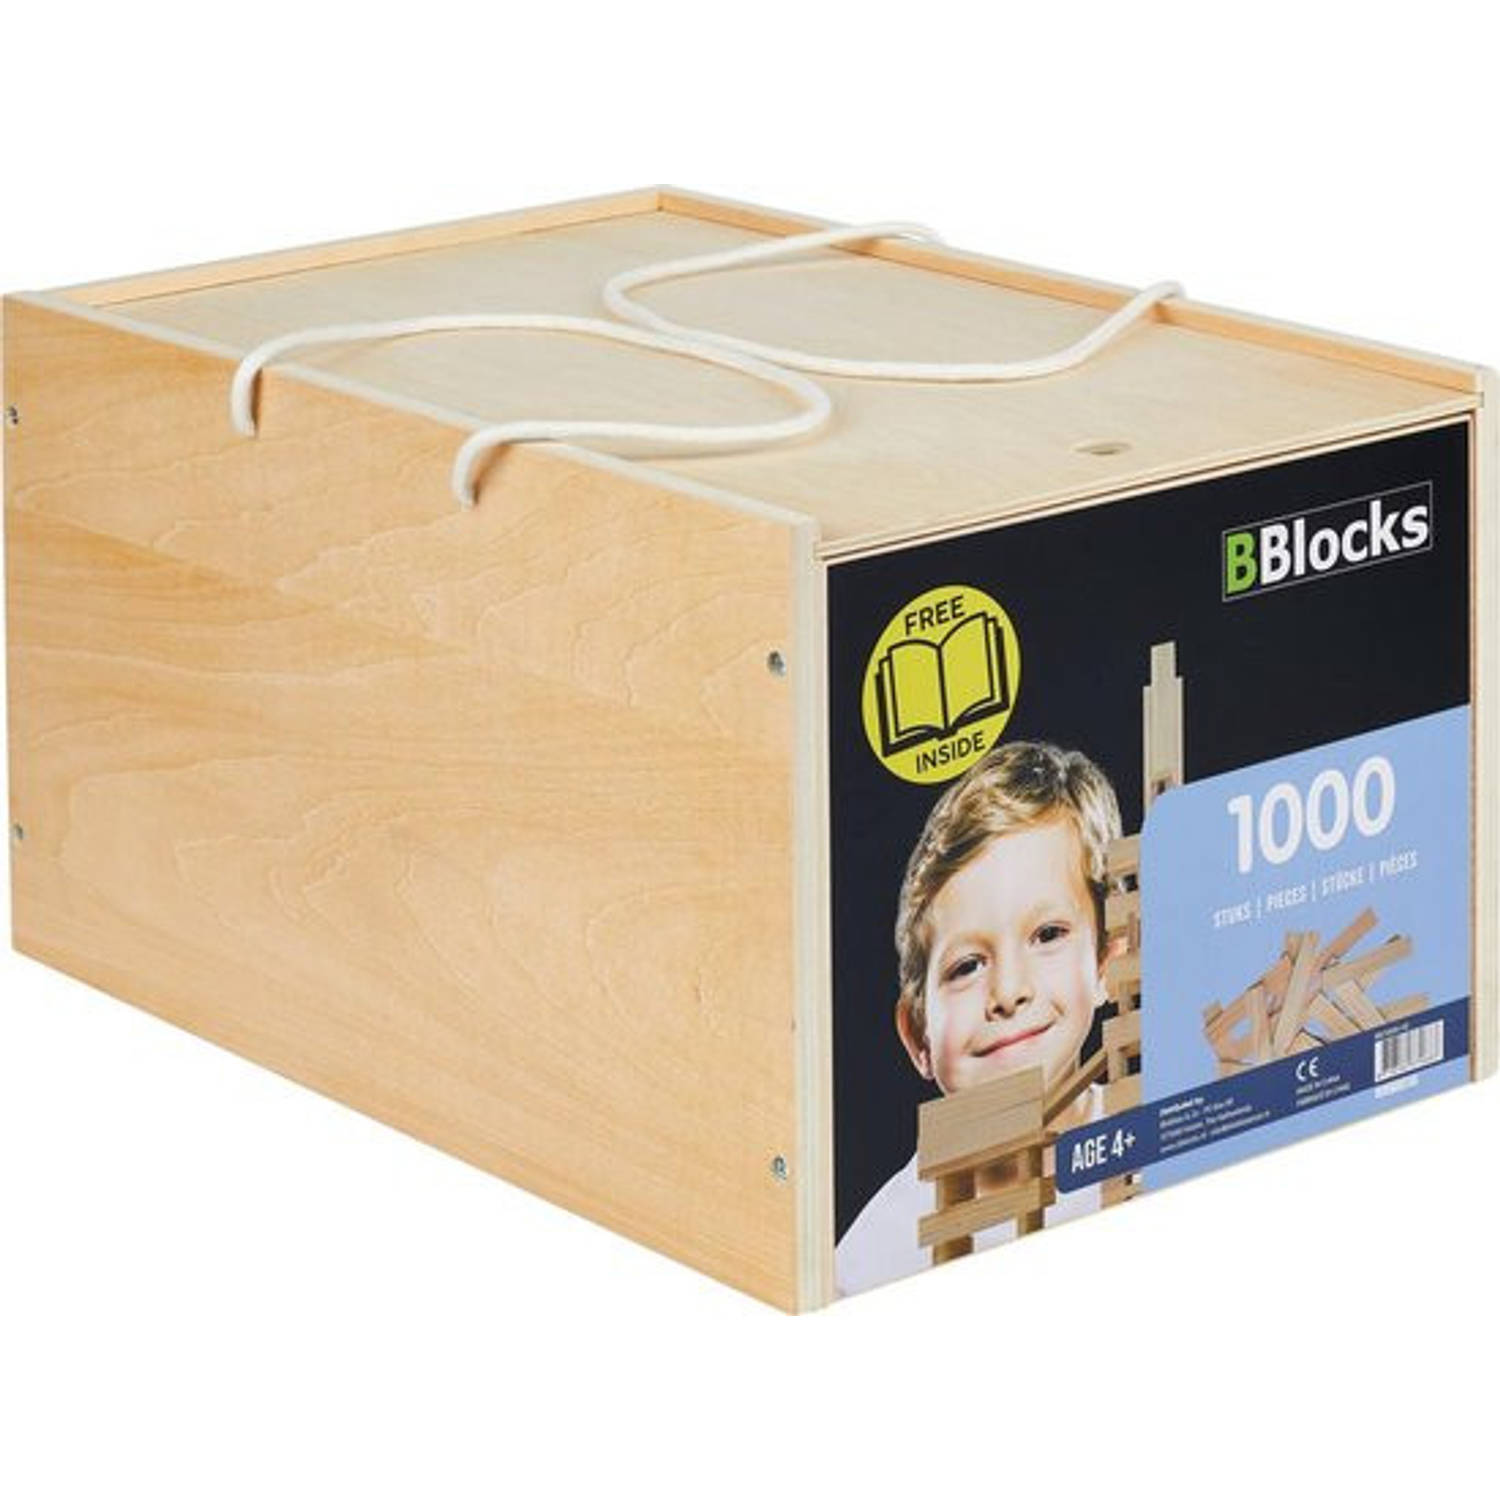 BBlocks Houten Plankjes in Luxe Houten Kist 1000 Stuks